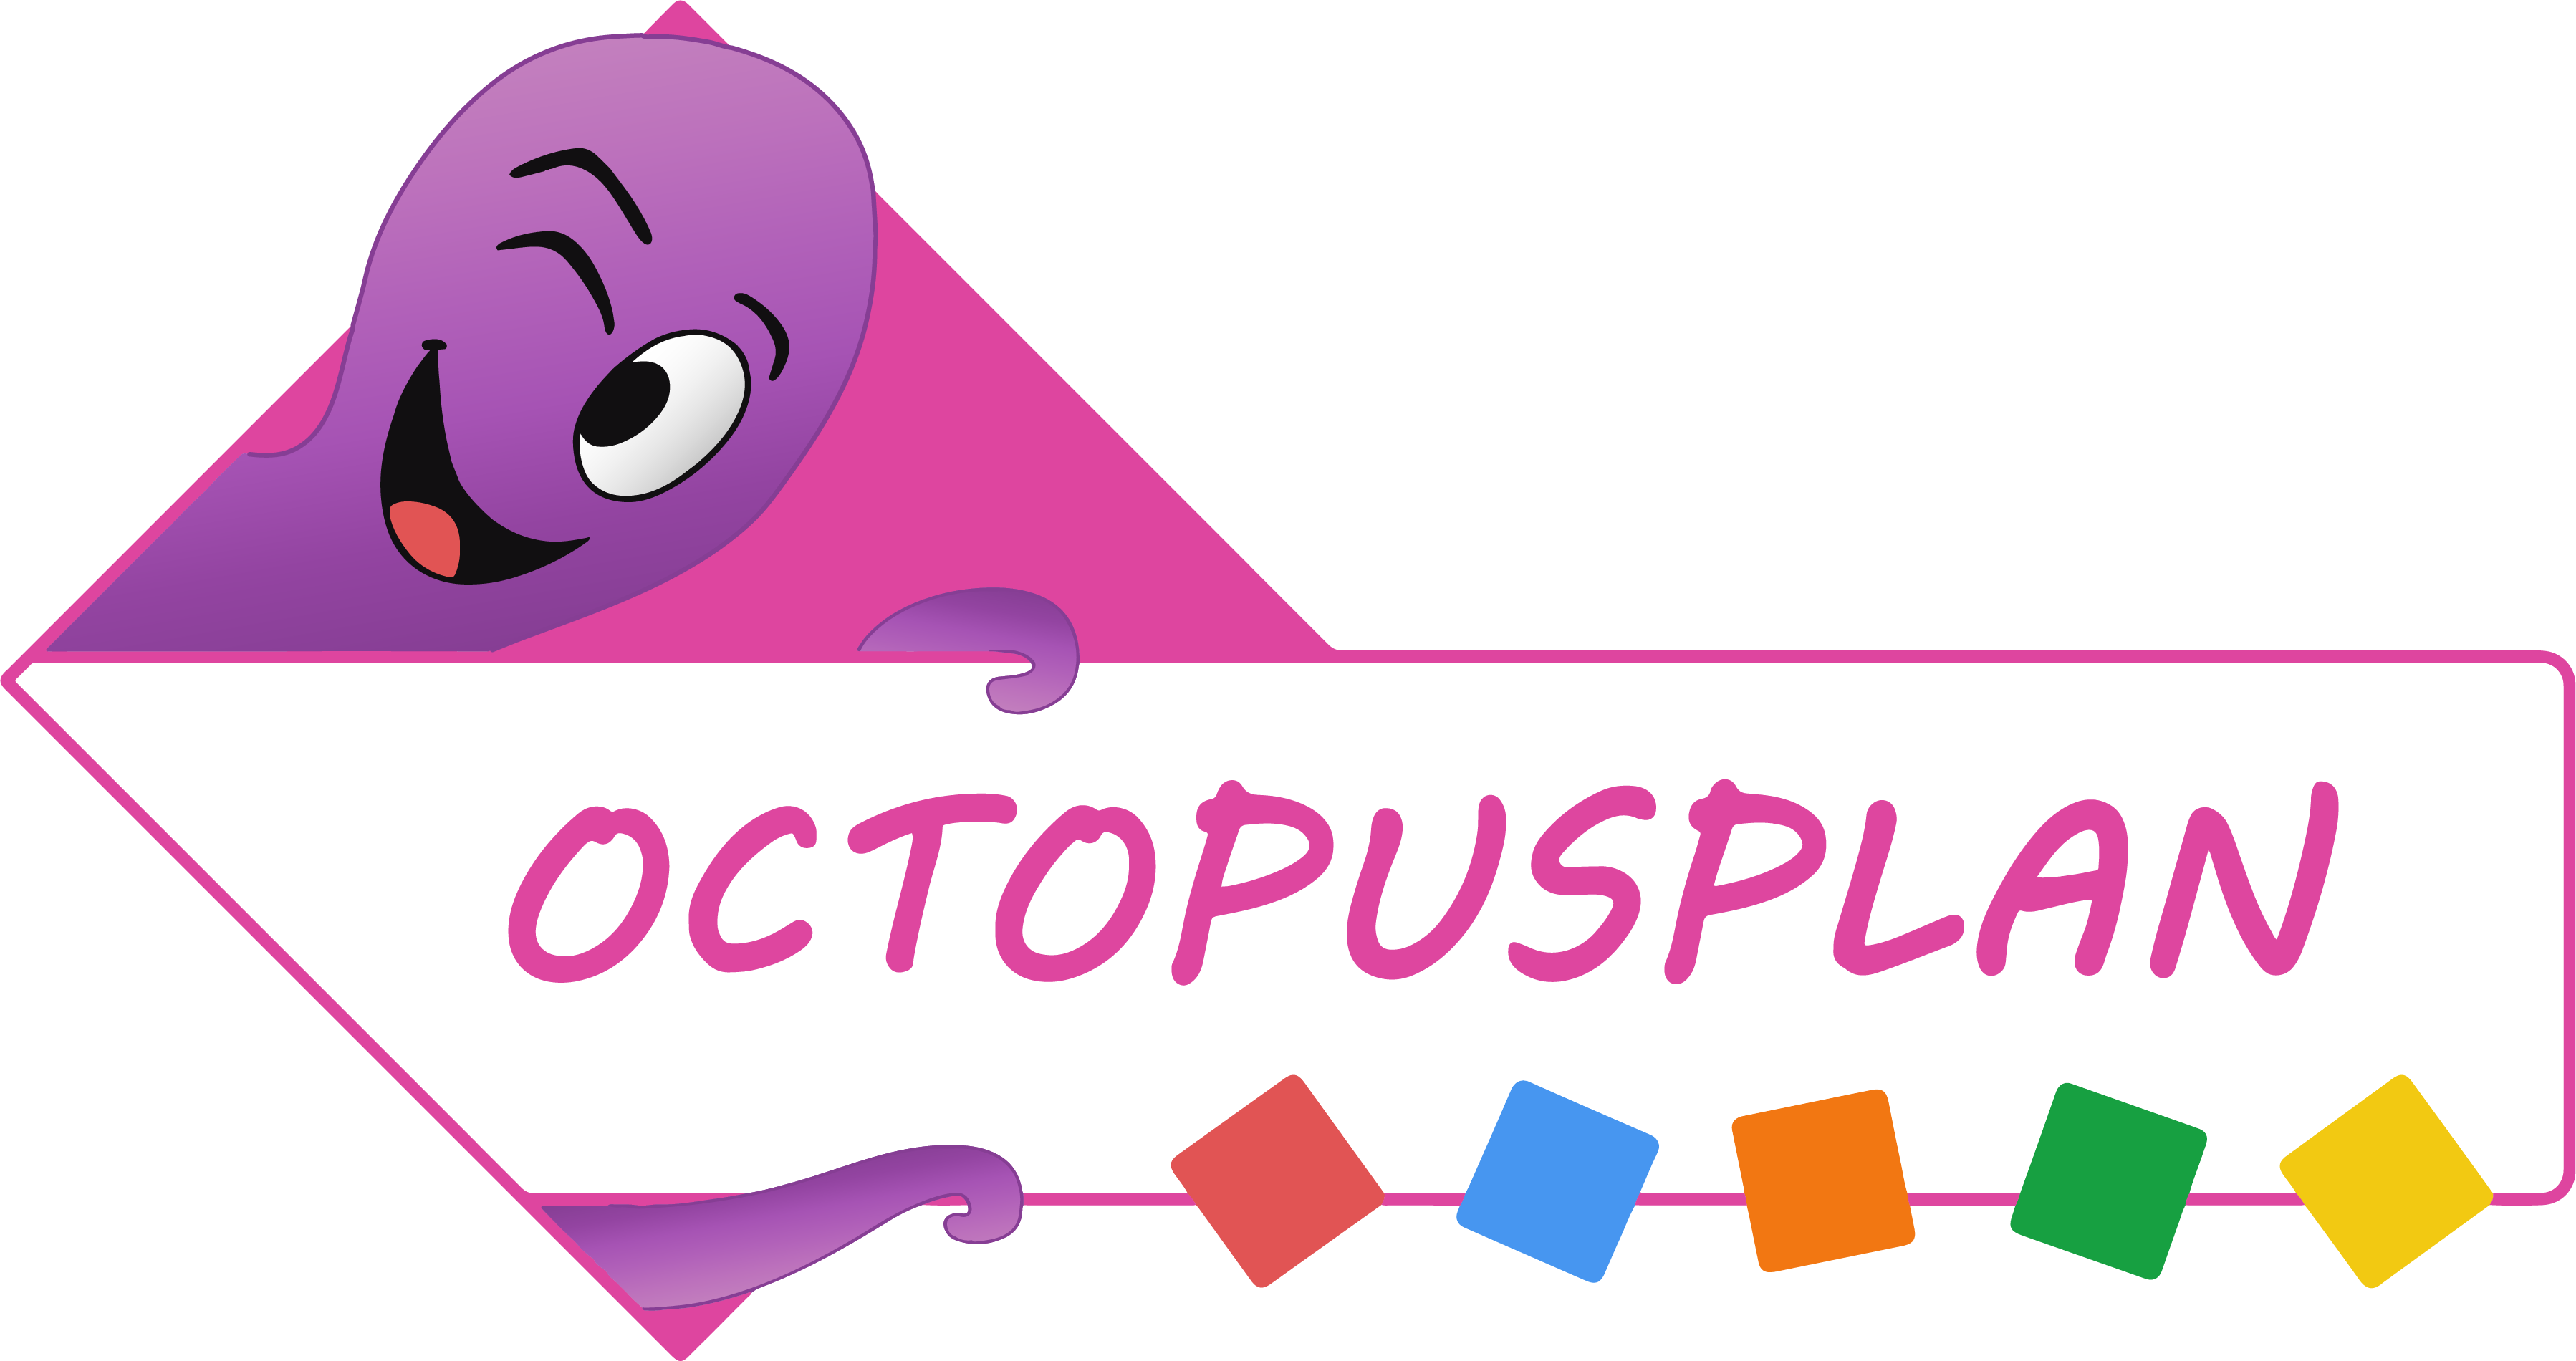 Octopusplan